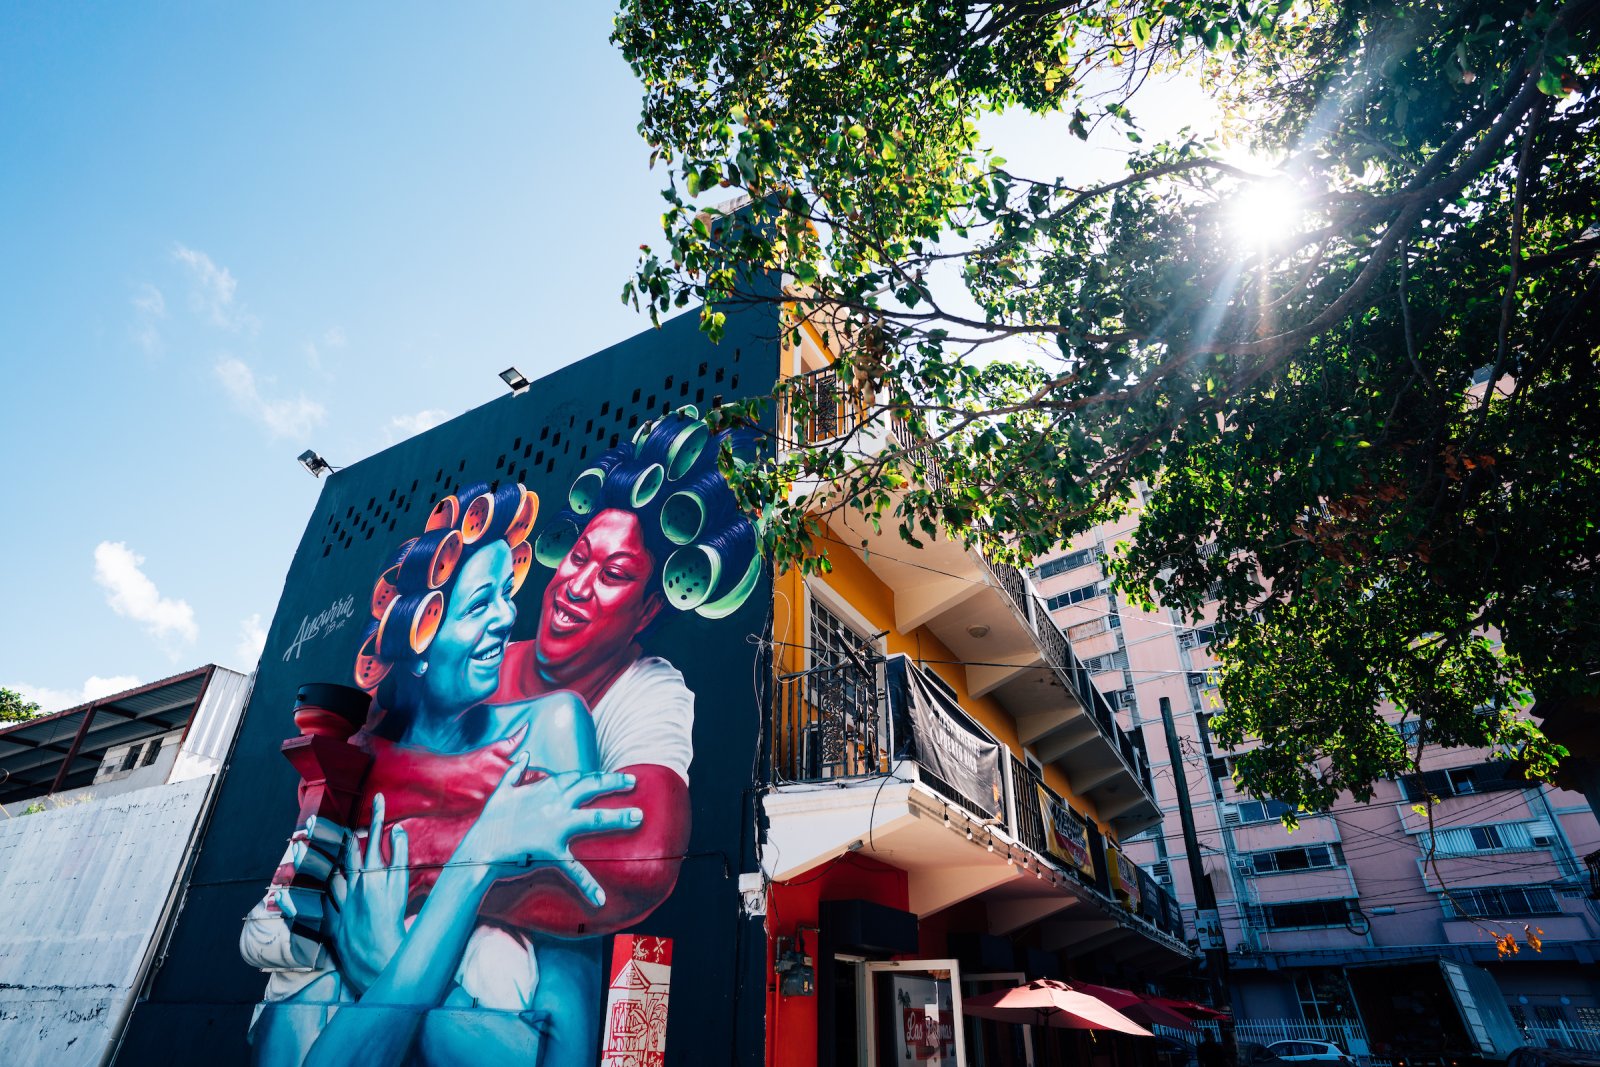 Colorful mural in the Santurce neighborhood.